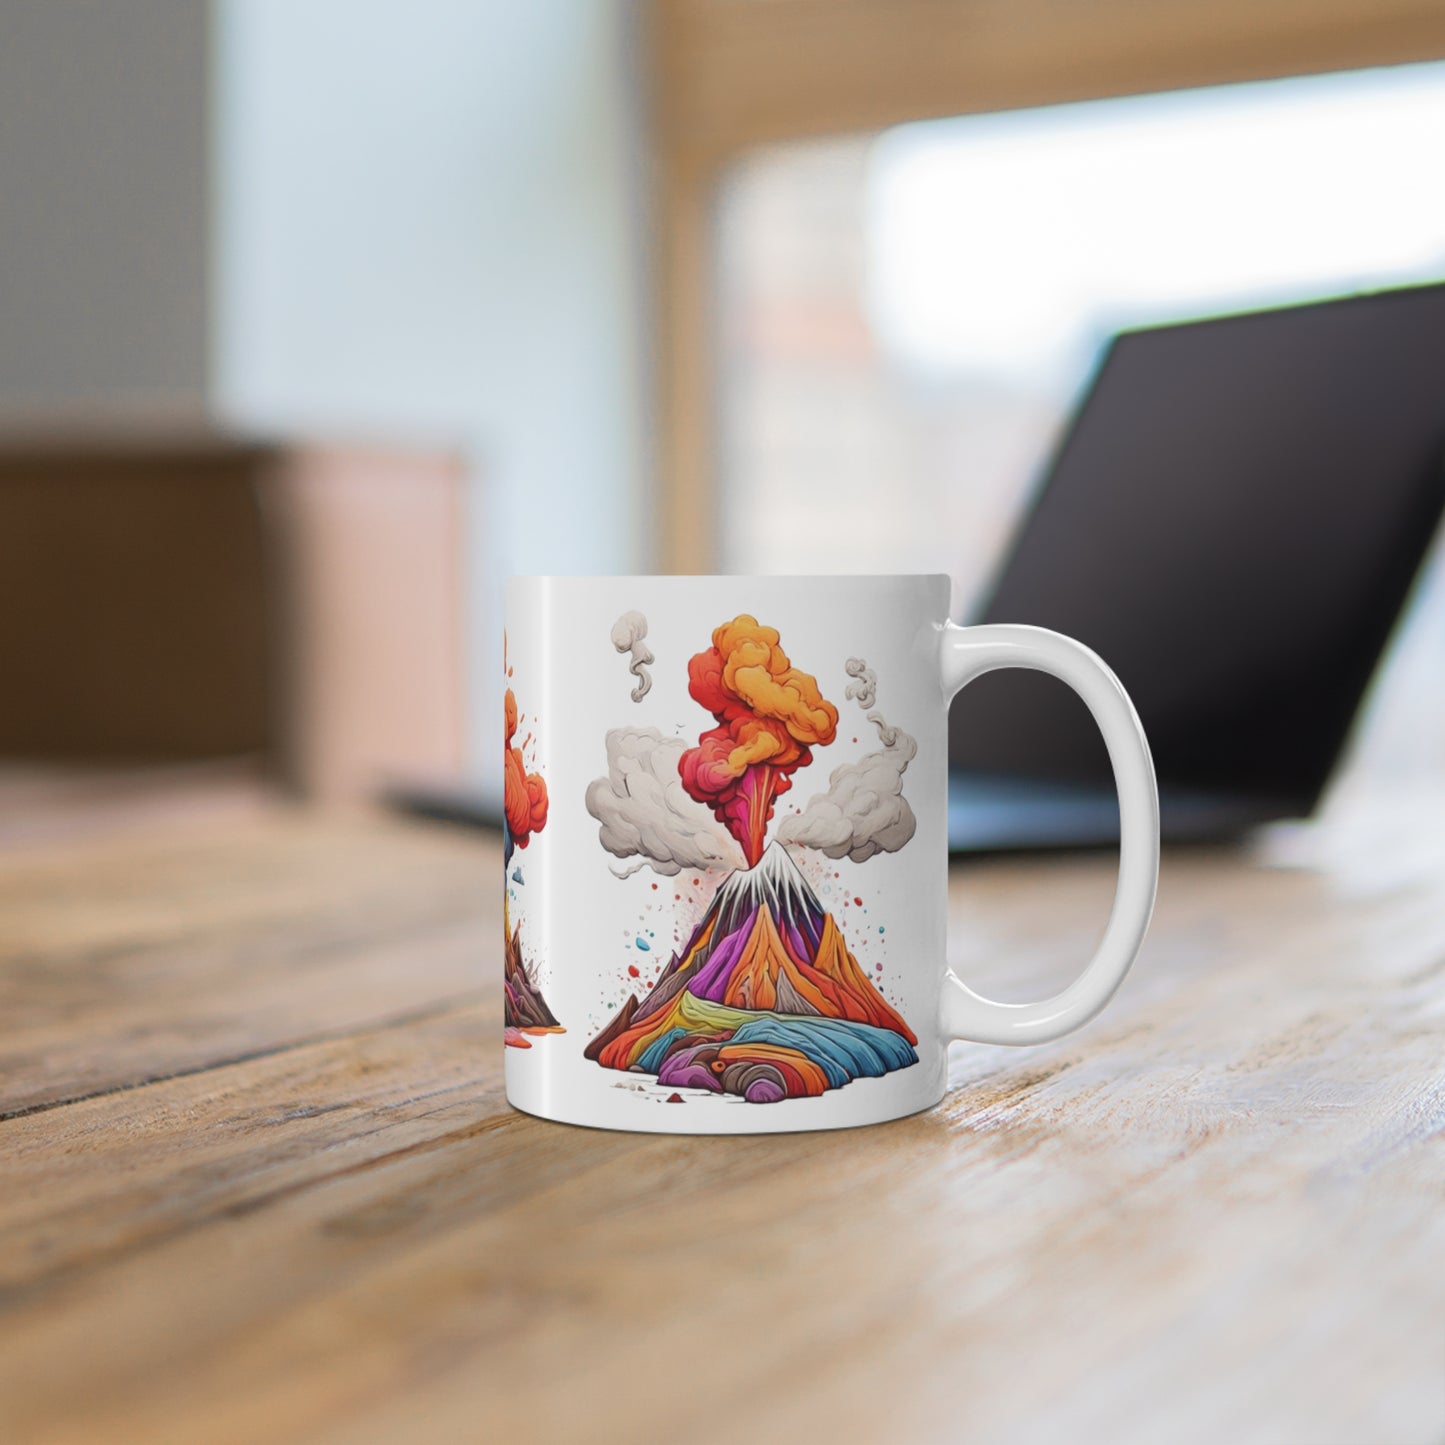 Colourful Messy Volcanos Mug - Ceramic Coffee Mug 11oz